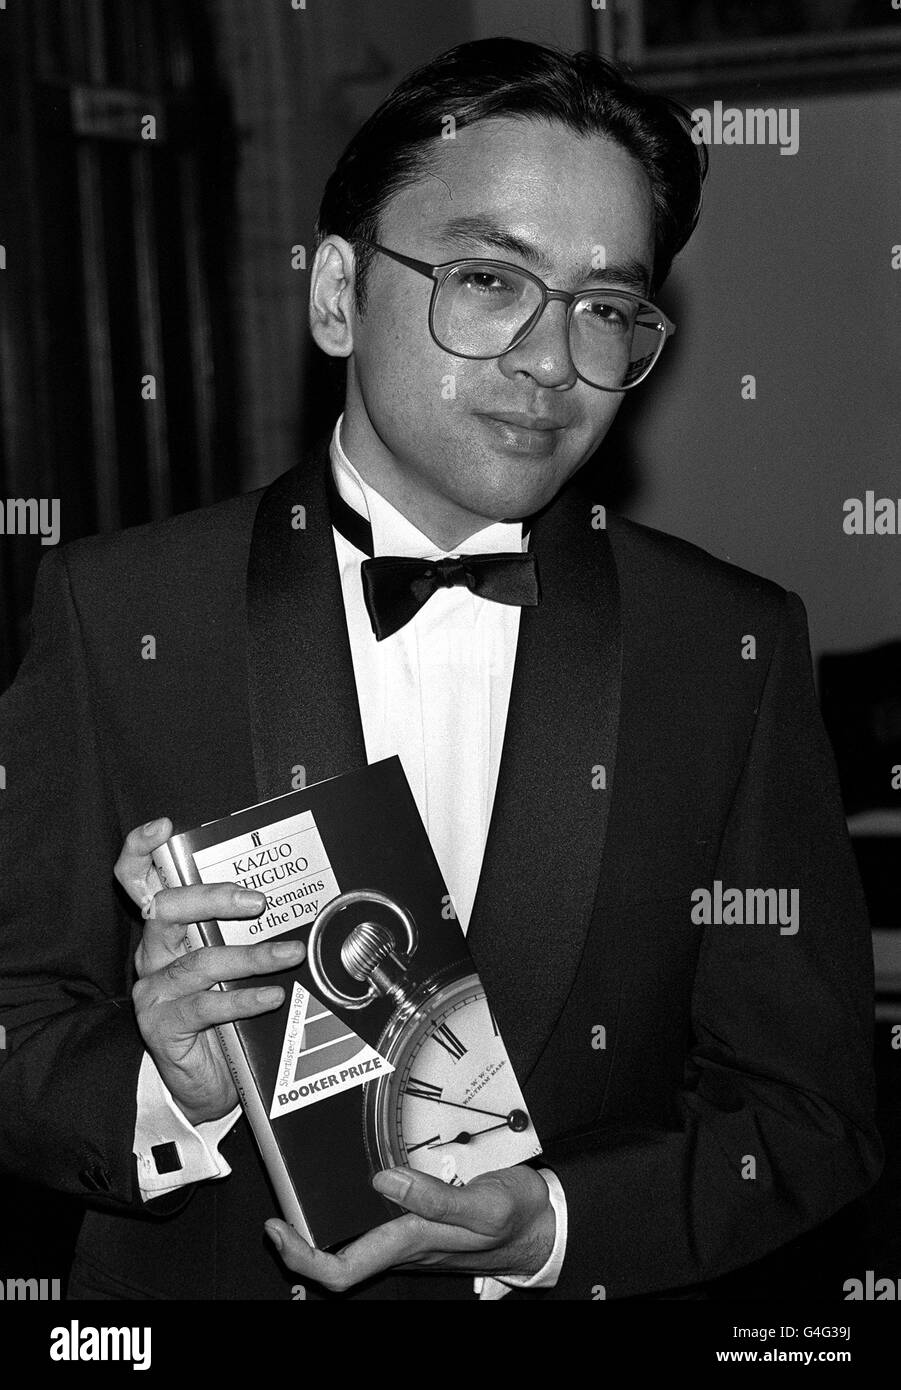 PA NEWS FOTO 26/10/89 autore giapponese KAZUO ISHIGURO con il suo libro "RETE DEL GIORNO' a London Guildhall dove fu nominato 1989 BOOKER IL VINCITORE DEL PREMIO Foto Stock